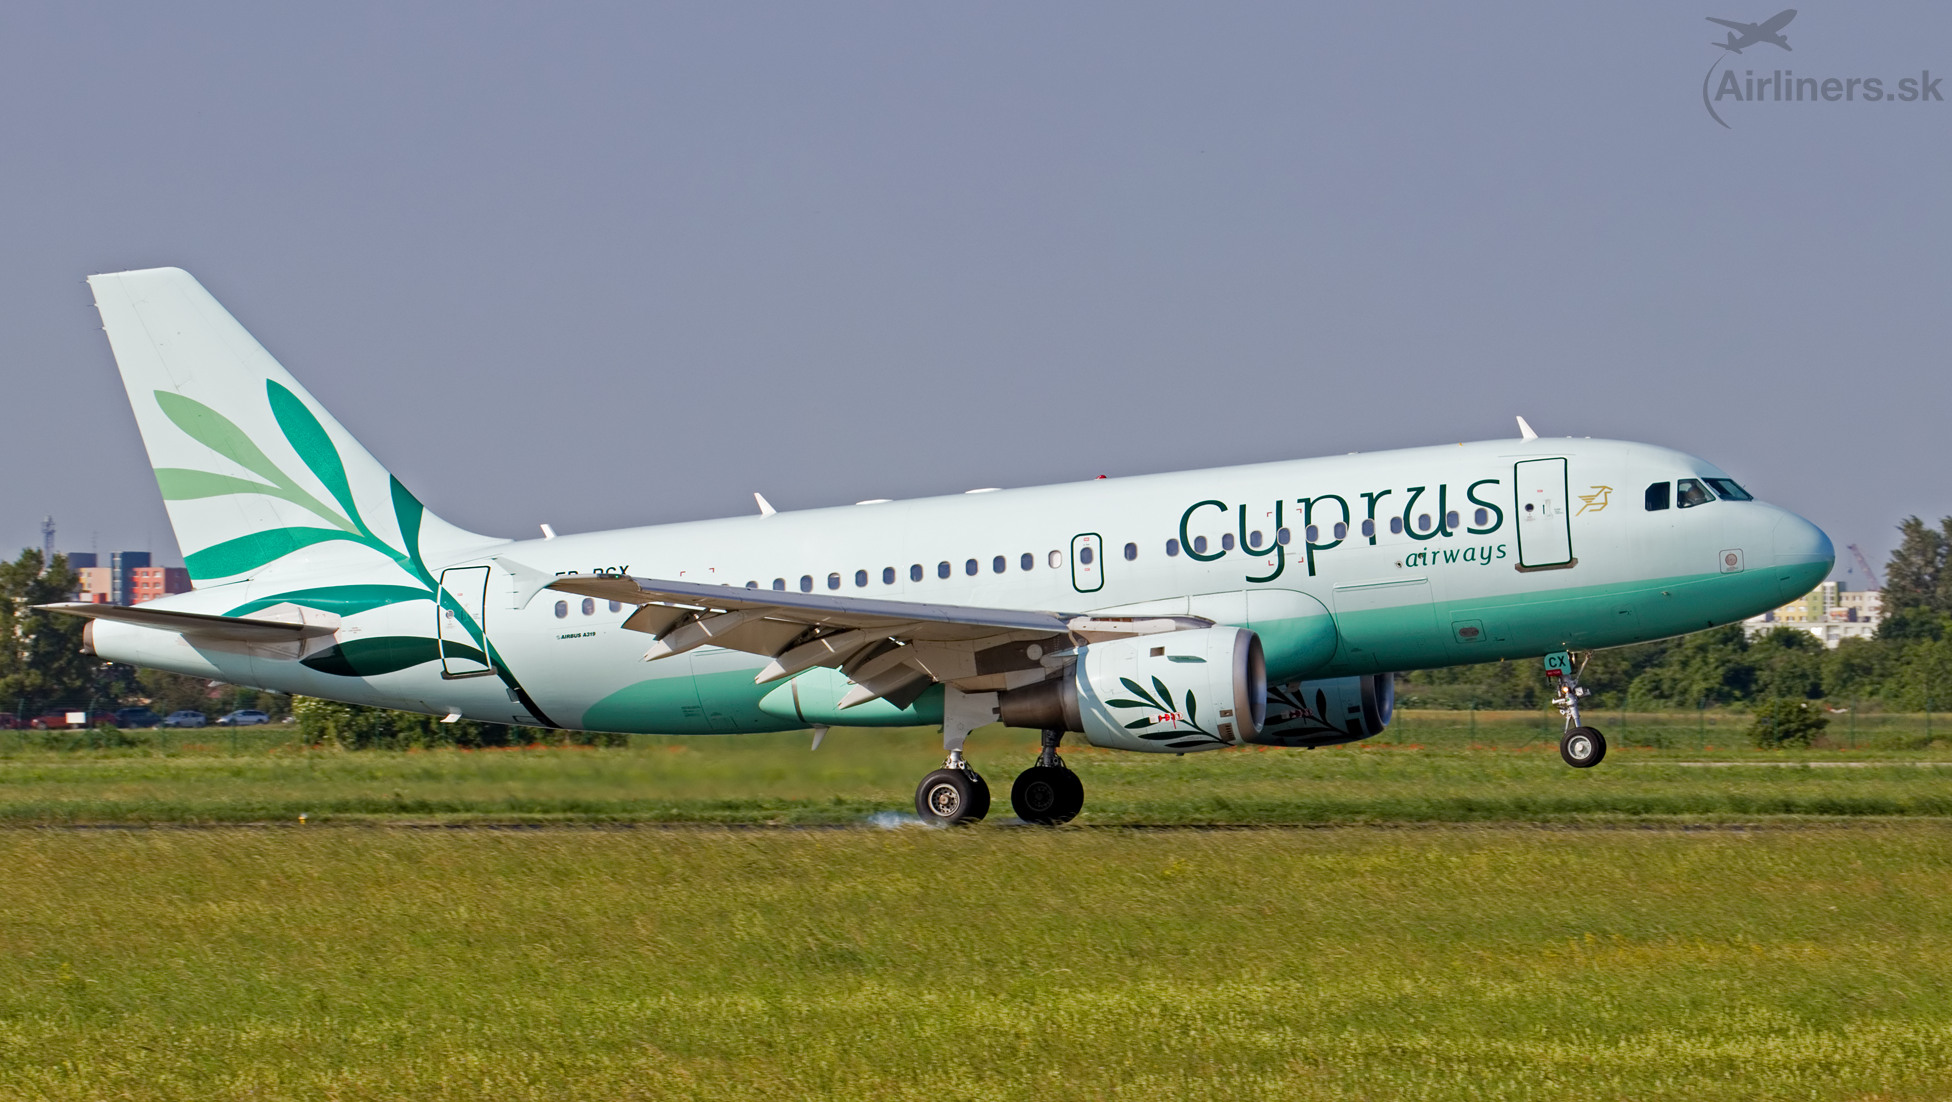 Η Cyprus Airways ανακοίνωσε πτήσεις από €40 (για 3 μόνο μέρες)